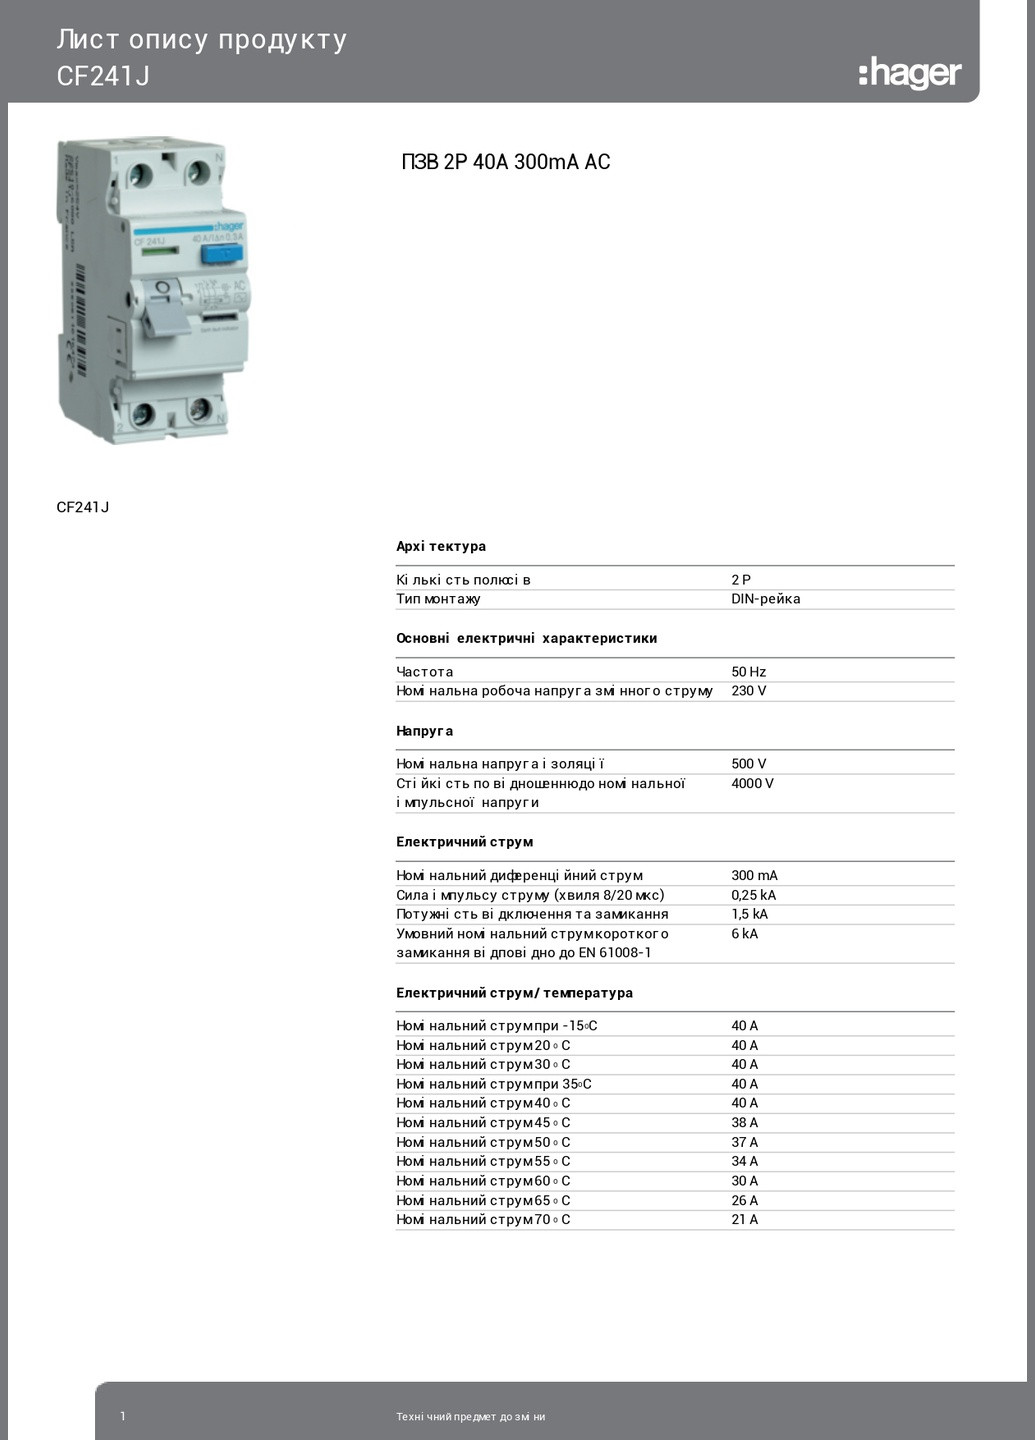 Диференціальне реле ПЗВ CF241J 2P 40A 300mA тип AC пристрій захисного відключення дифреле (3391) Hager (271531055)